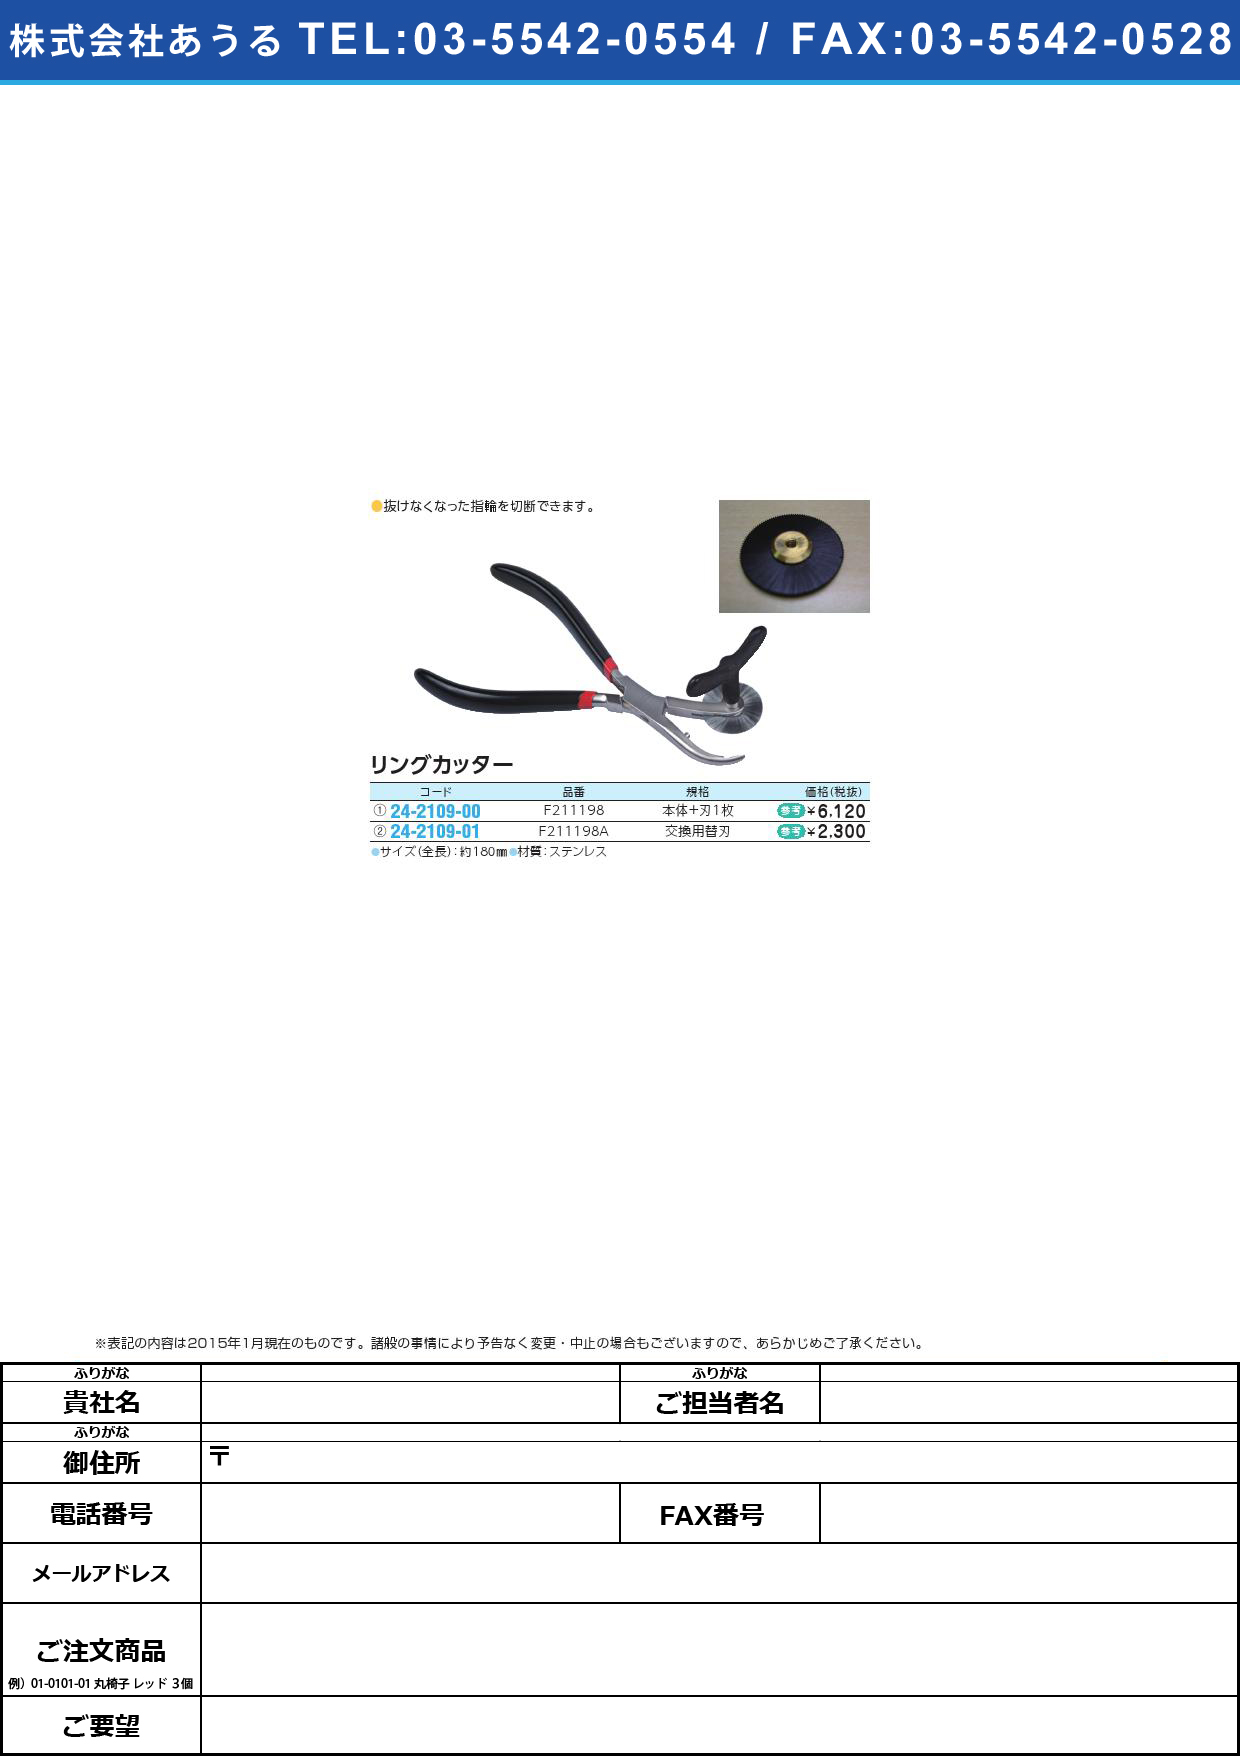 リングカッター用替刃 ﾘﾝｸﾞｶｯﾀｰ(24-2109-01)F211198A